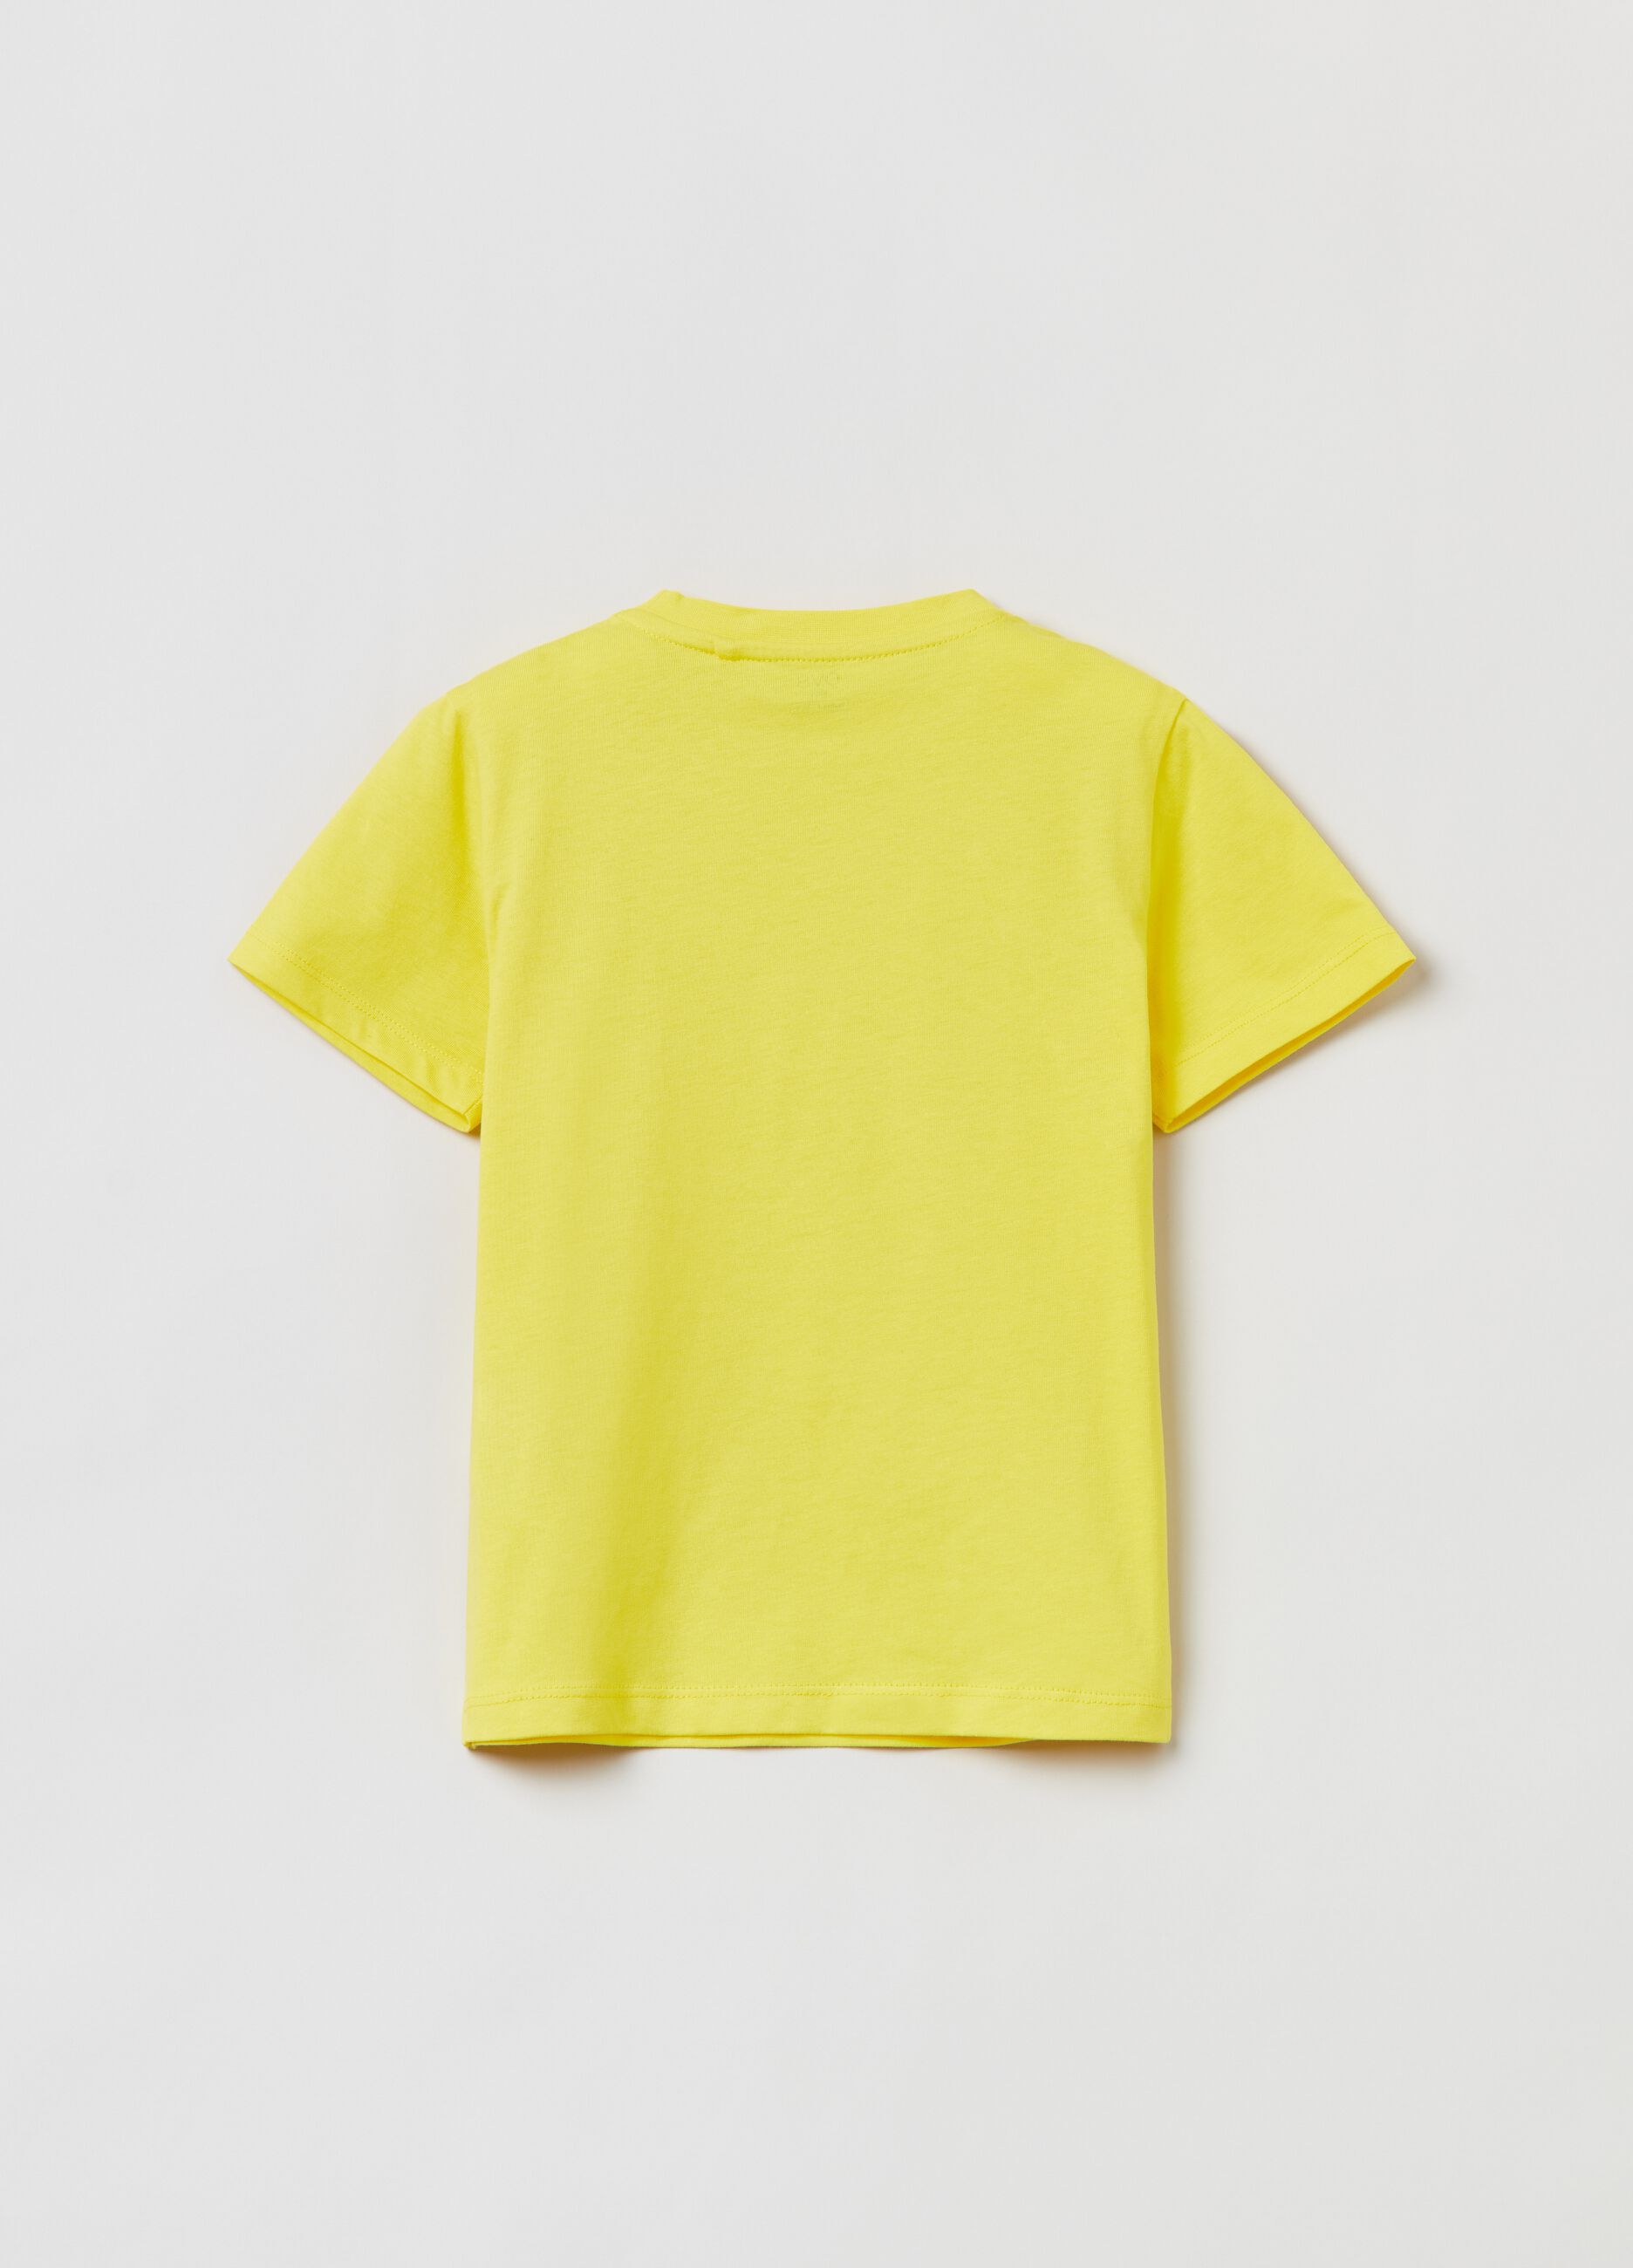 Camiseta Fitness de algodón en color liso.